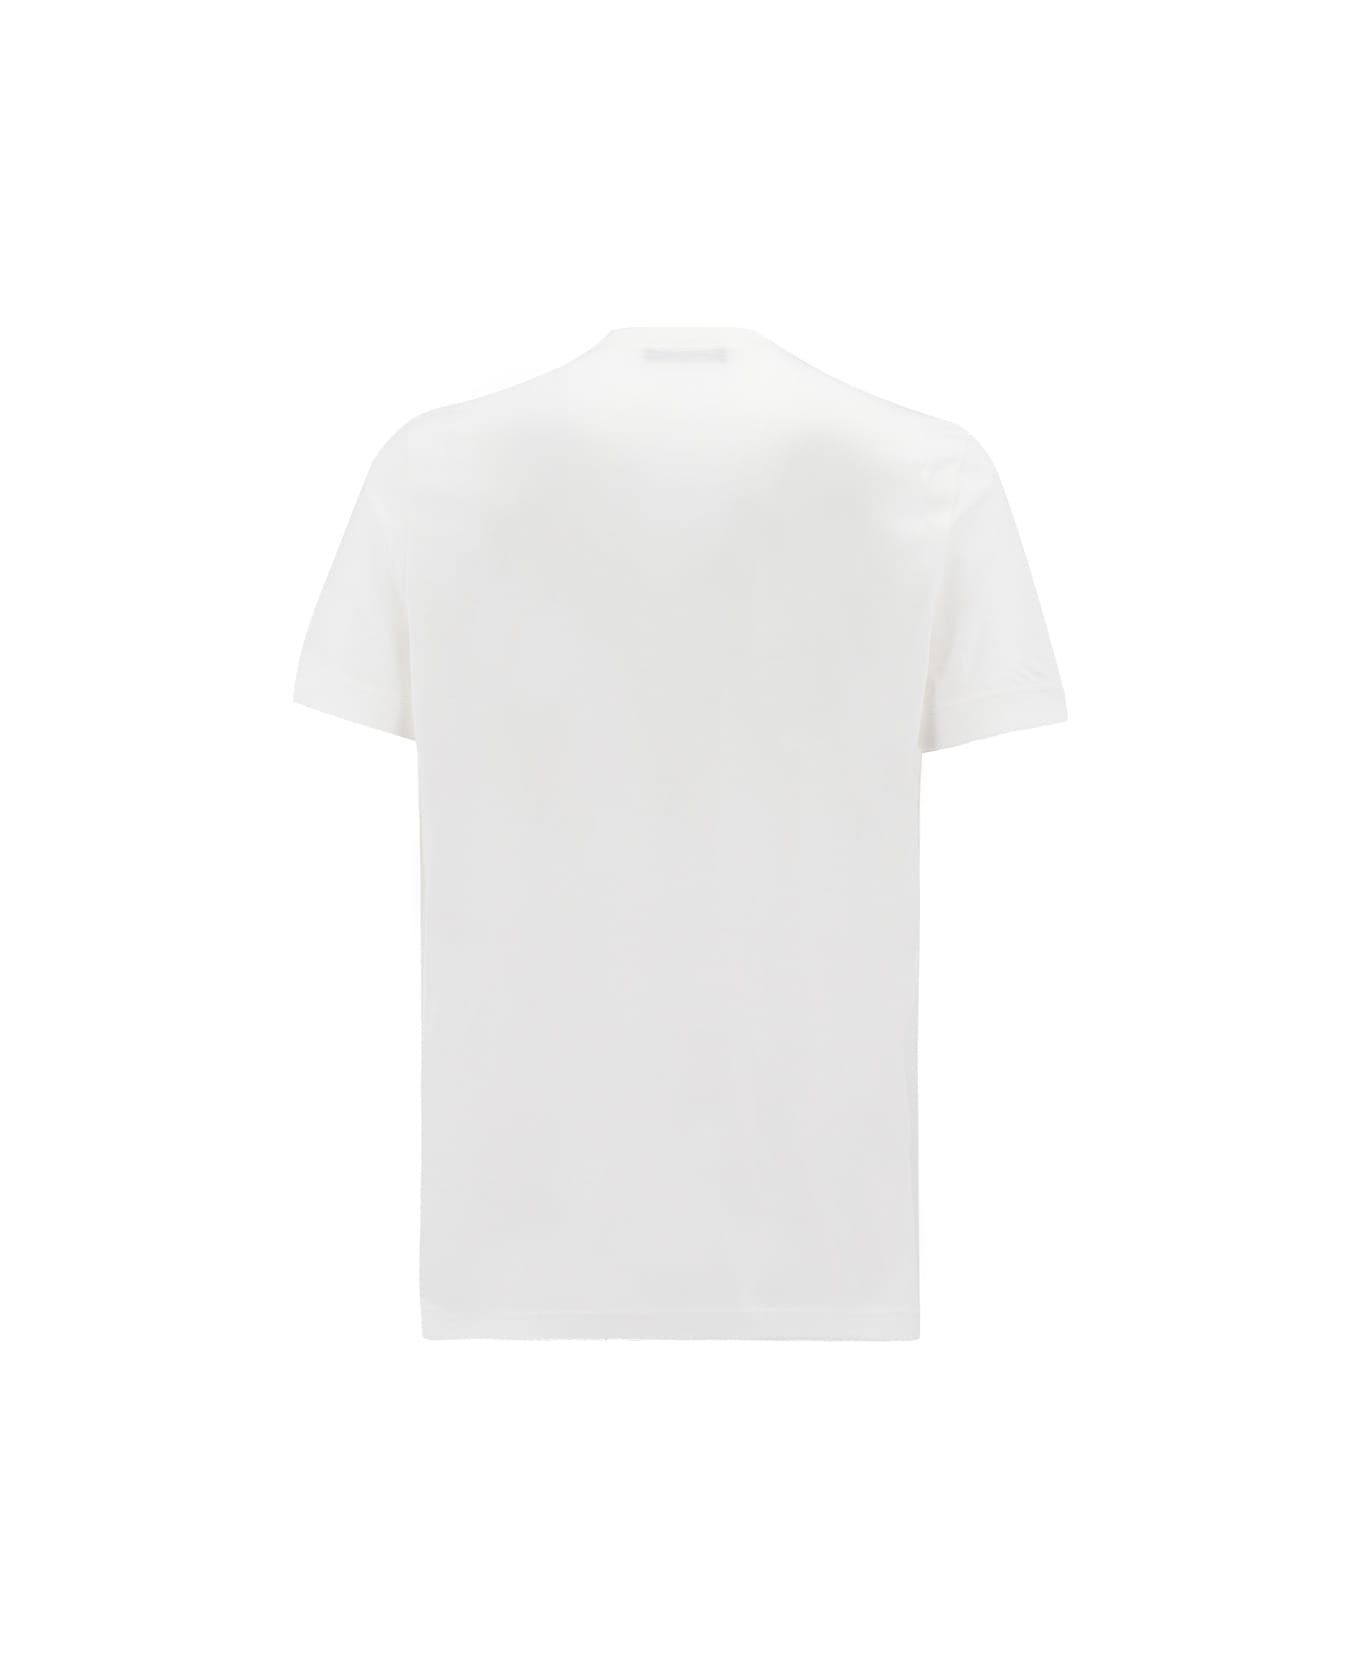 Kiton T-shirt - WHITE シャツ